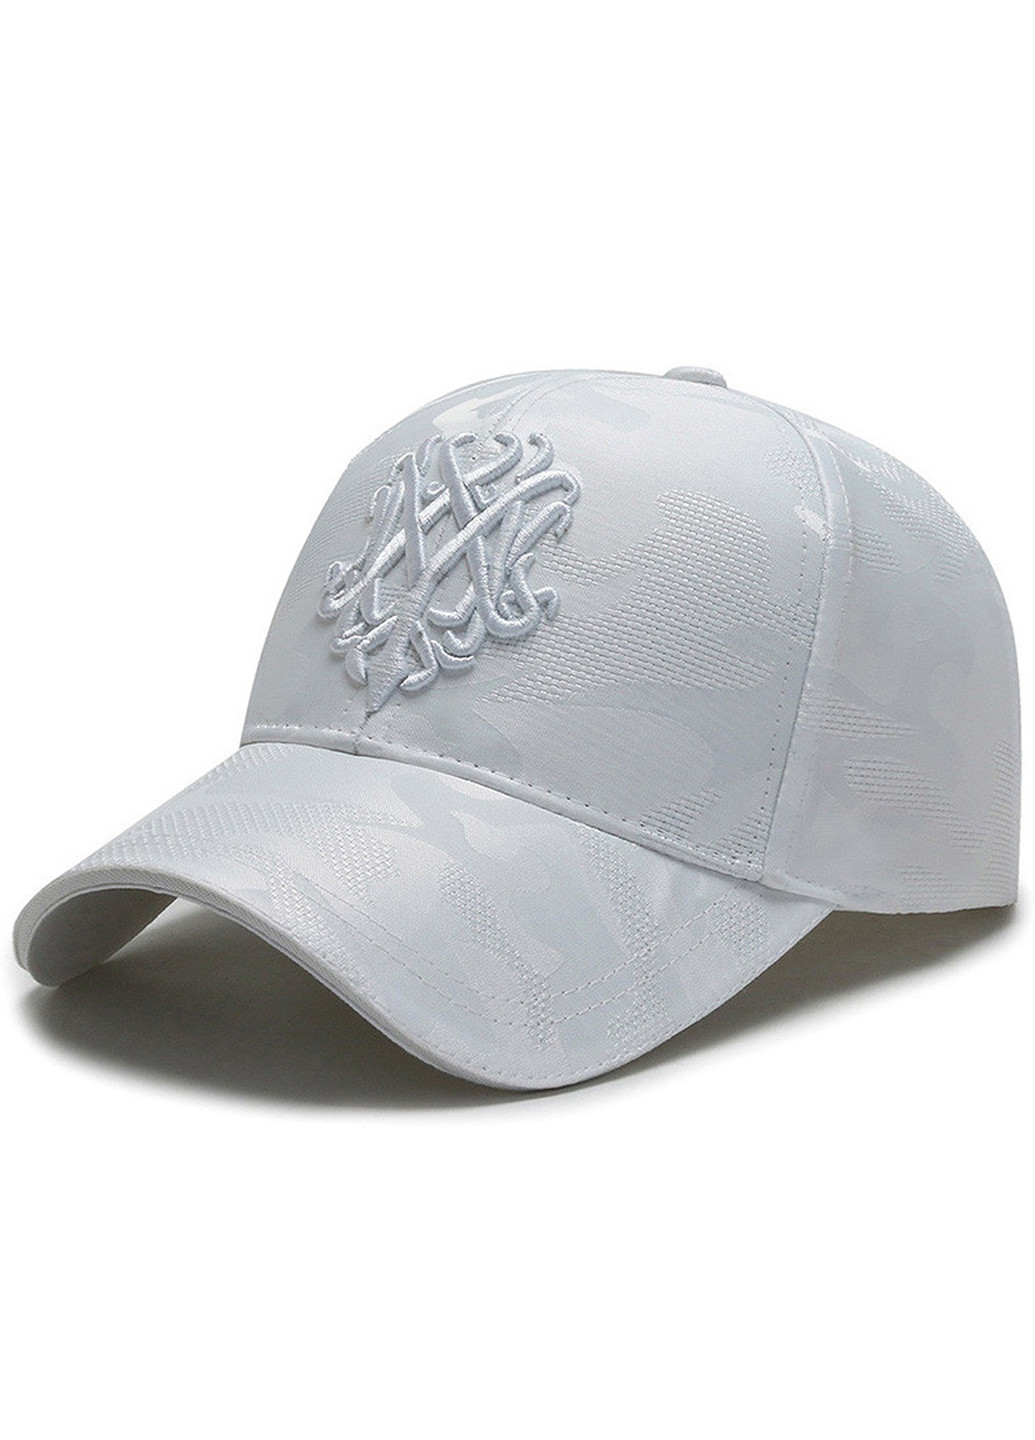 Крутая кепка для девушек SGS Sport Line бейсболка логотип белая спортивная акрил